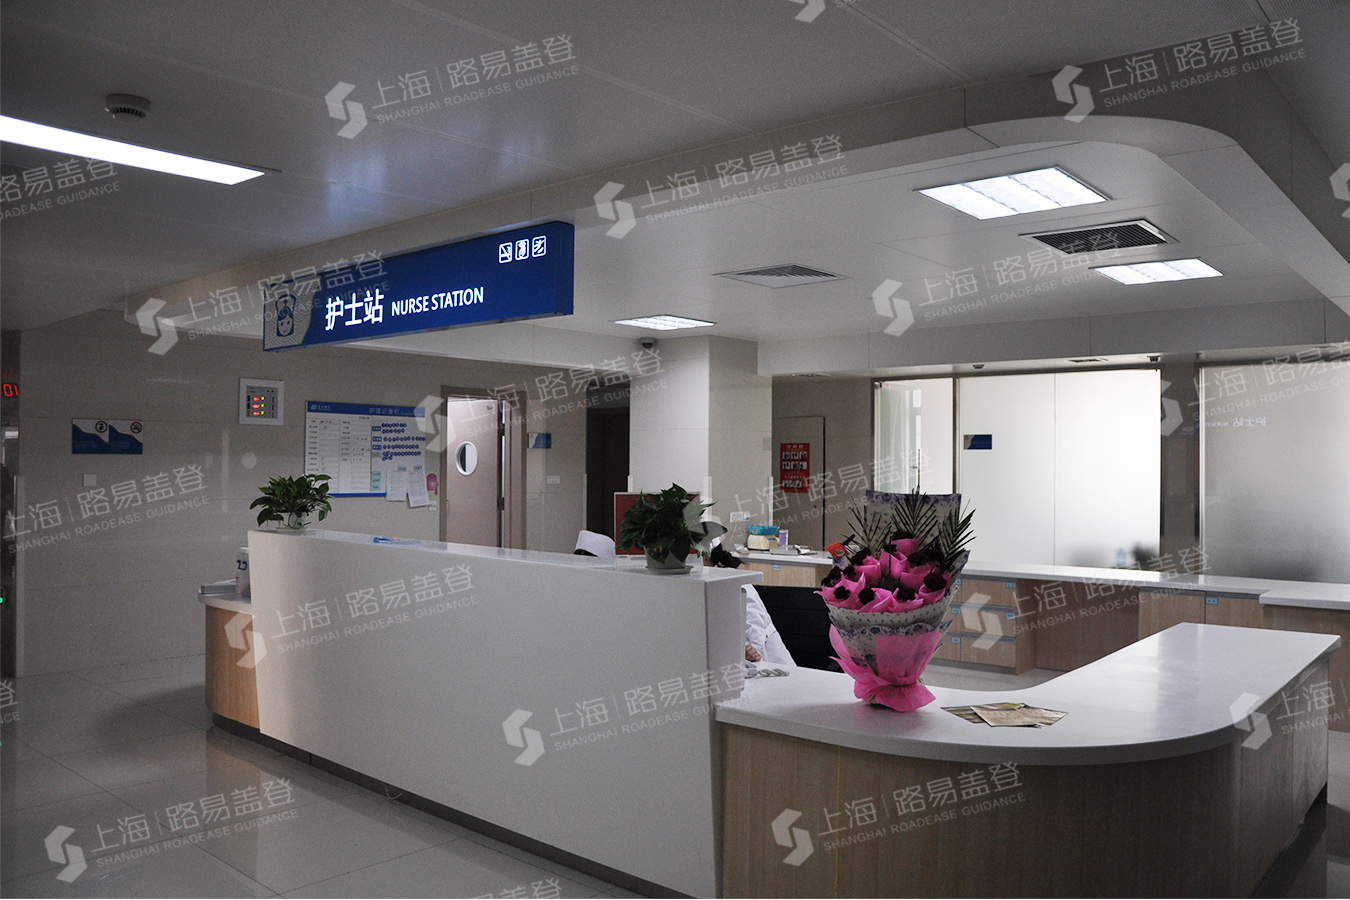 连云港市东方医院-导视系统设计制作-路易盖登-156 0173 1538 07